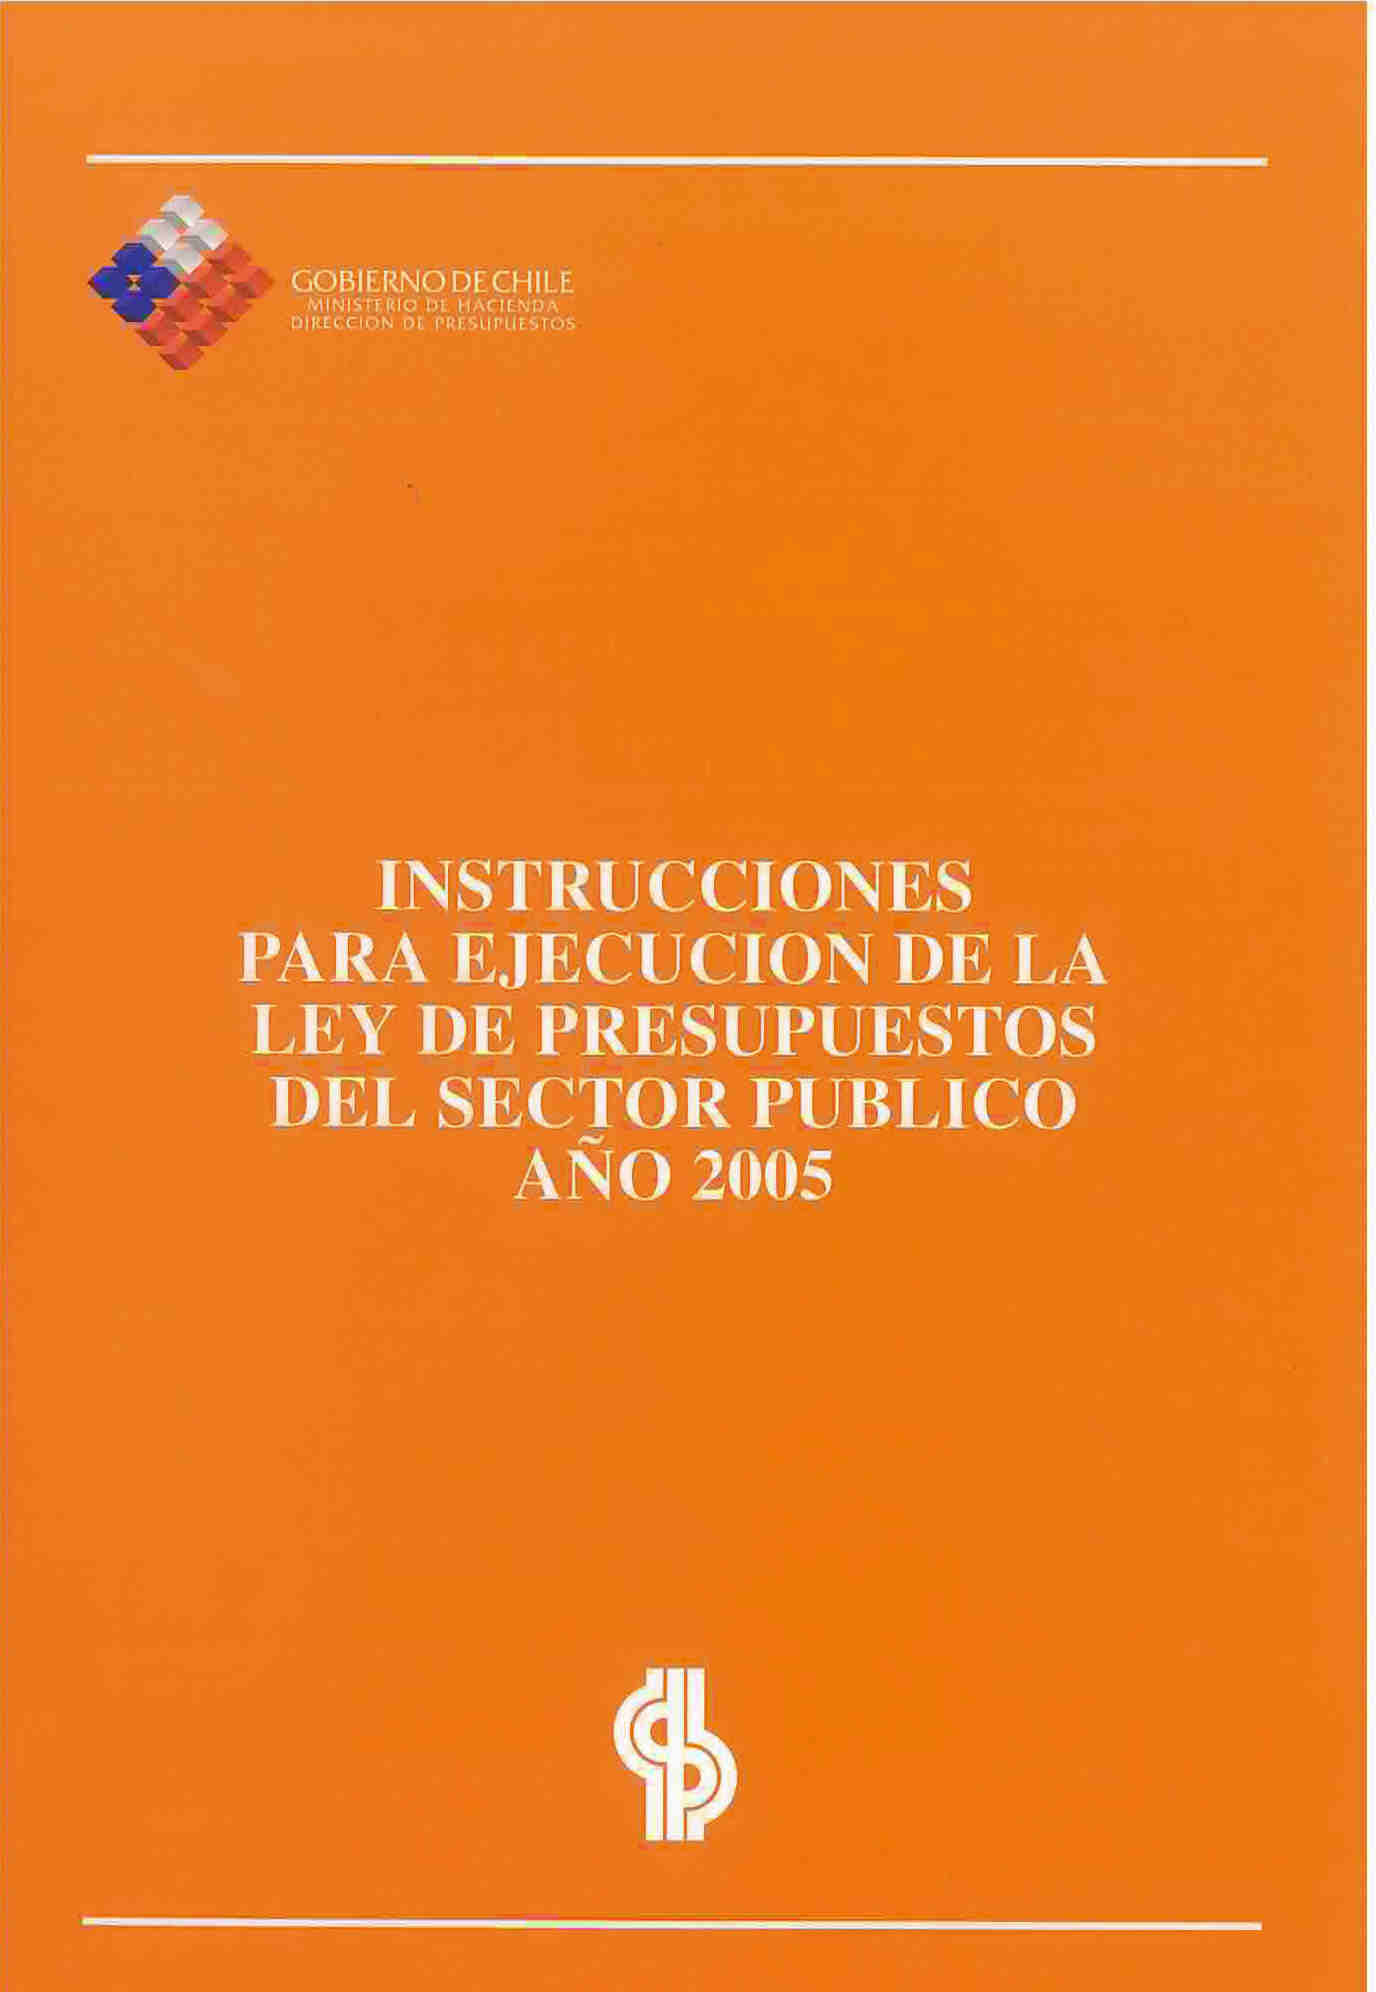 Instrucciones para ejecución de la ley de presupuestos del sector público año 2005